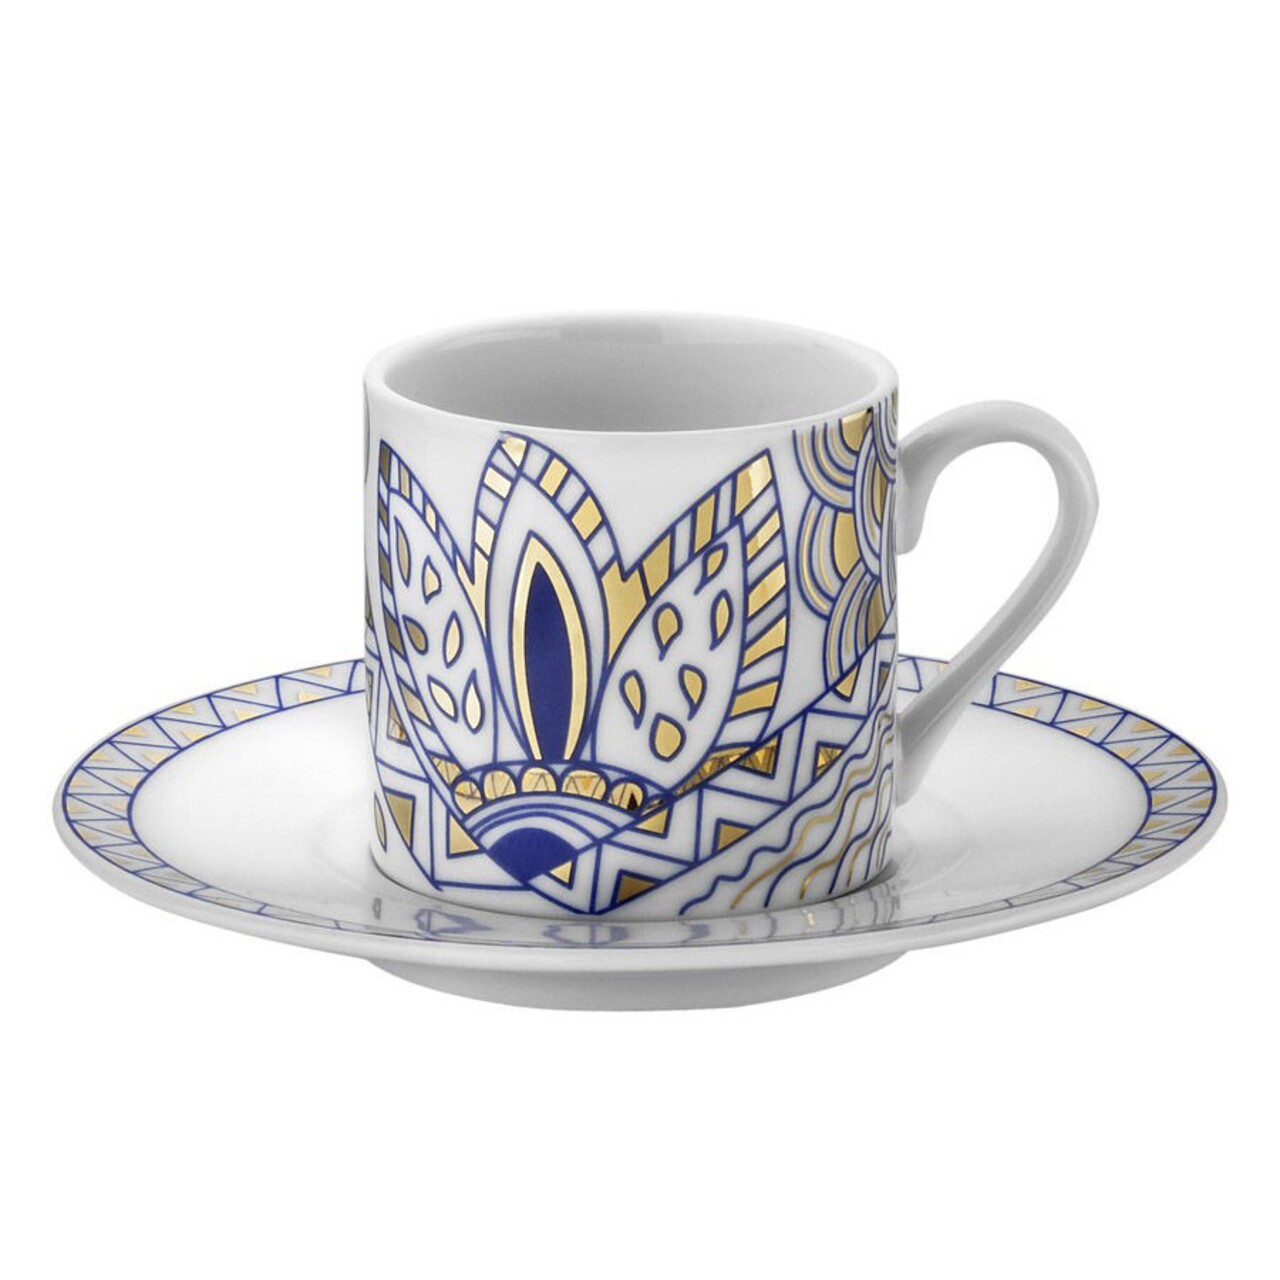 Kutahya Porselen Kávés készlet, RU12KT4309234, 12 darabos, porcelán